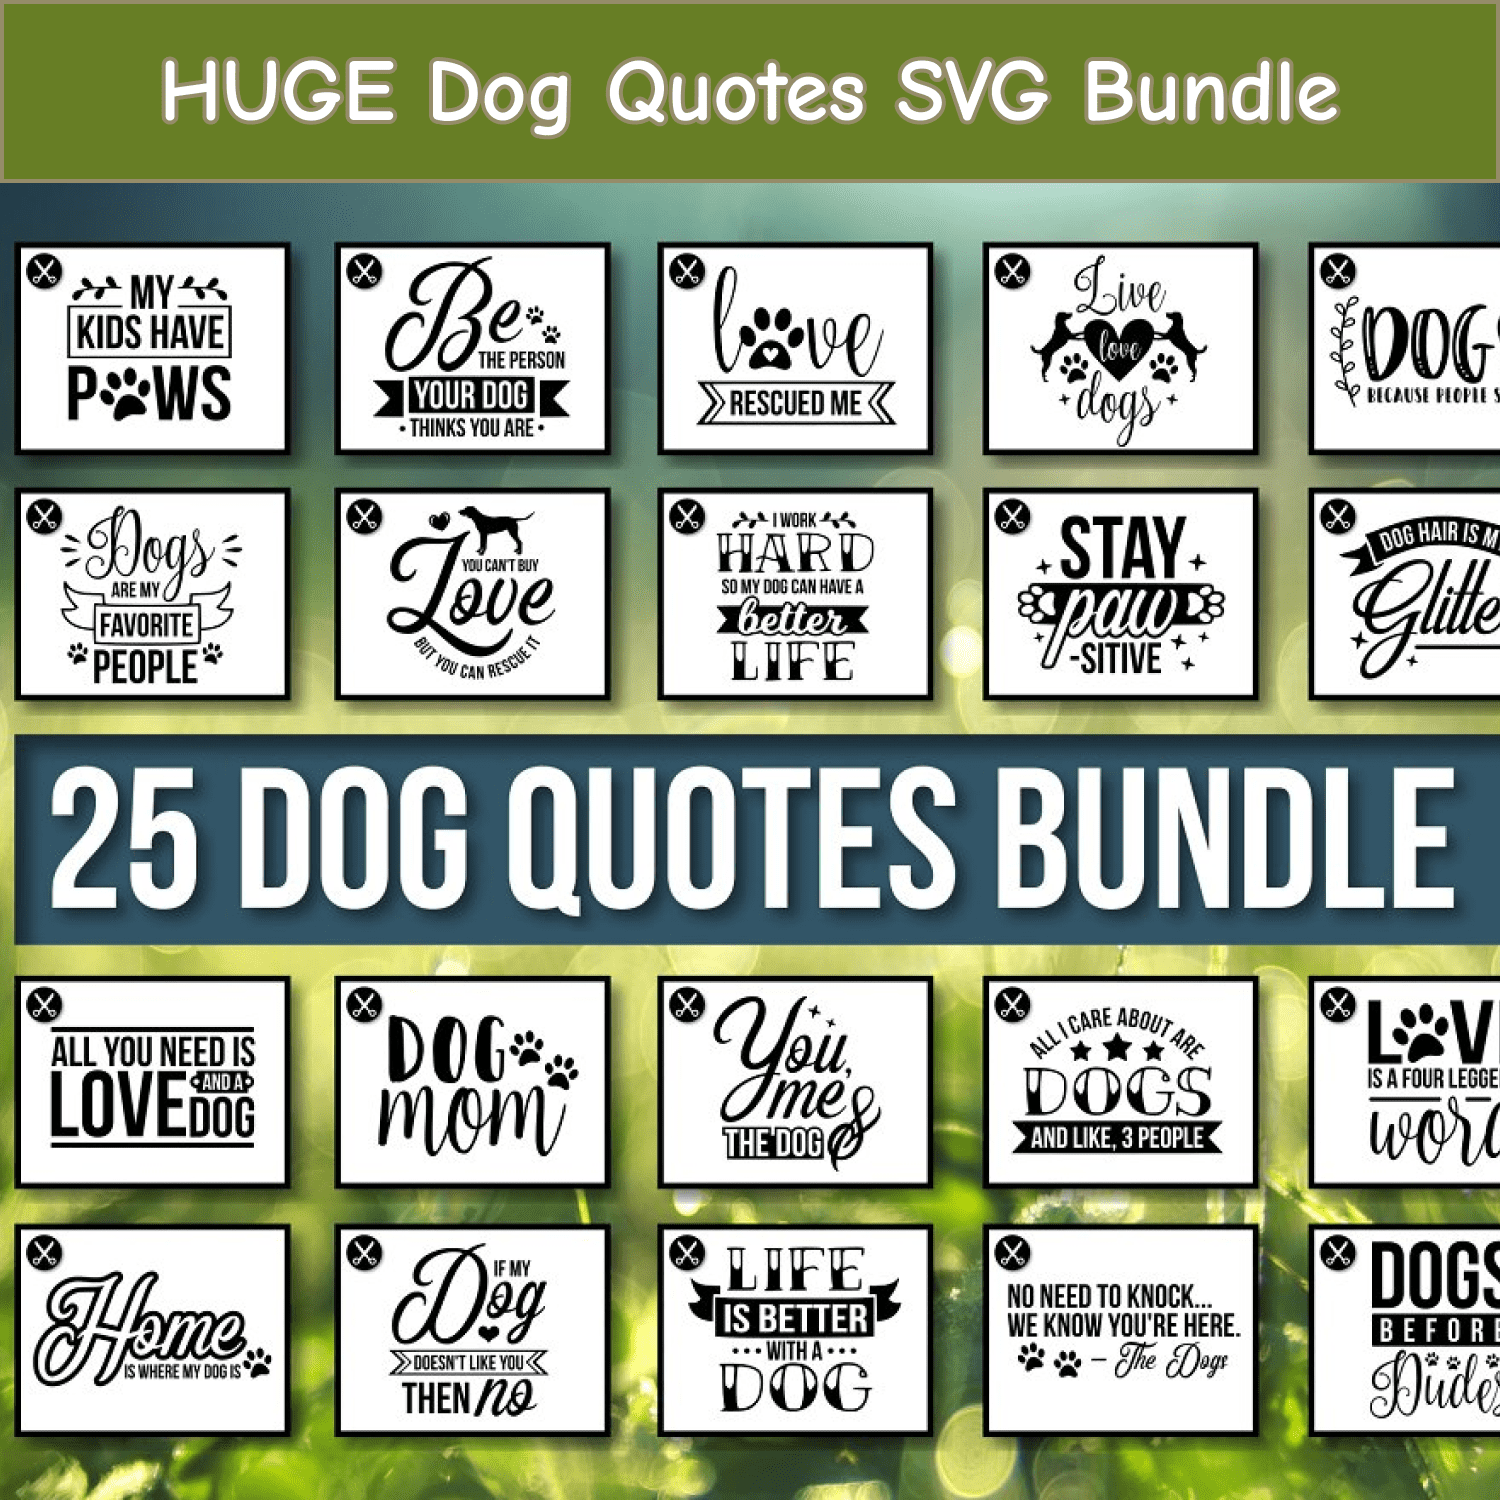 HUGE Dog Quotes SVG Bundle cover.